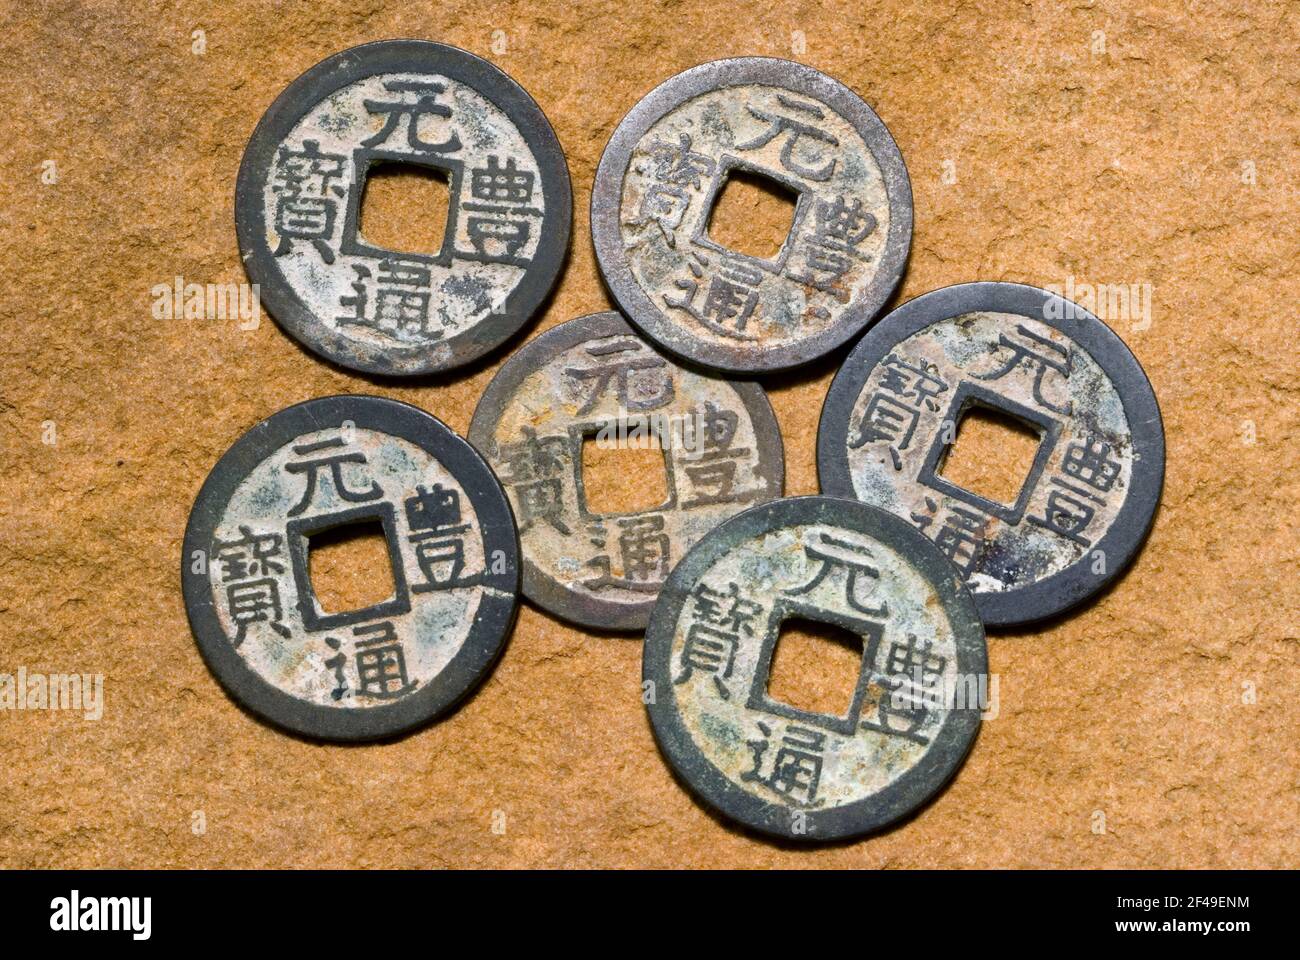 Nagasaki trade coins Stock Photo